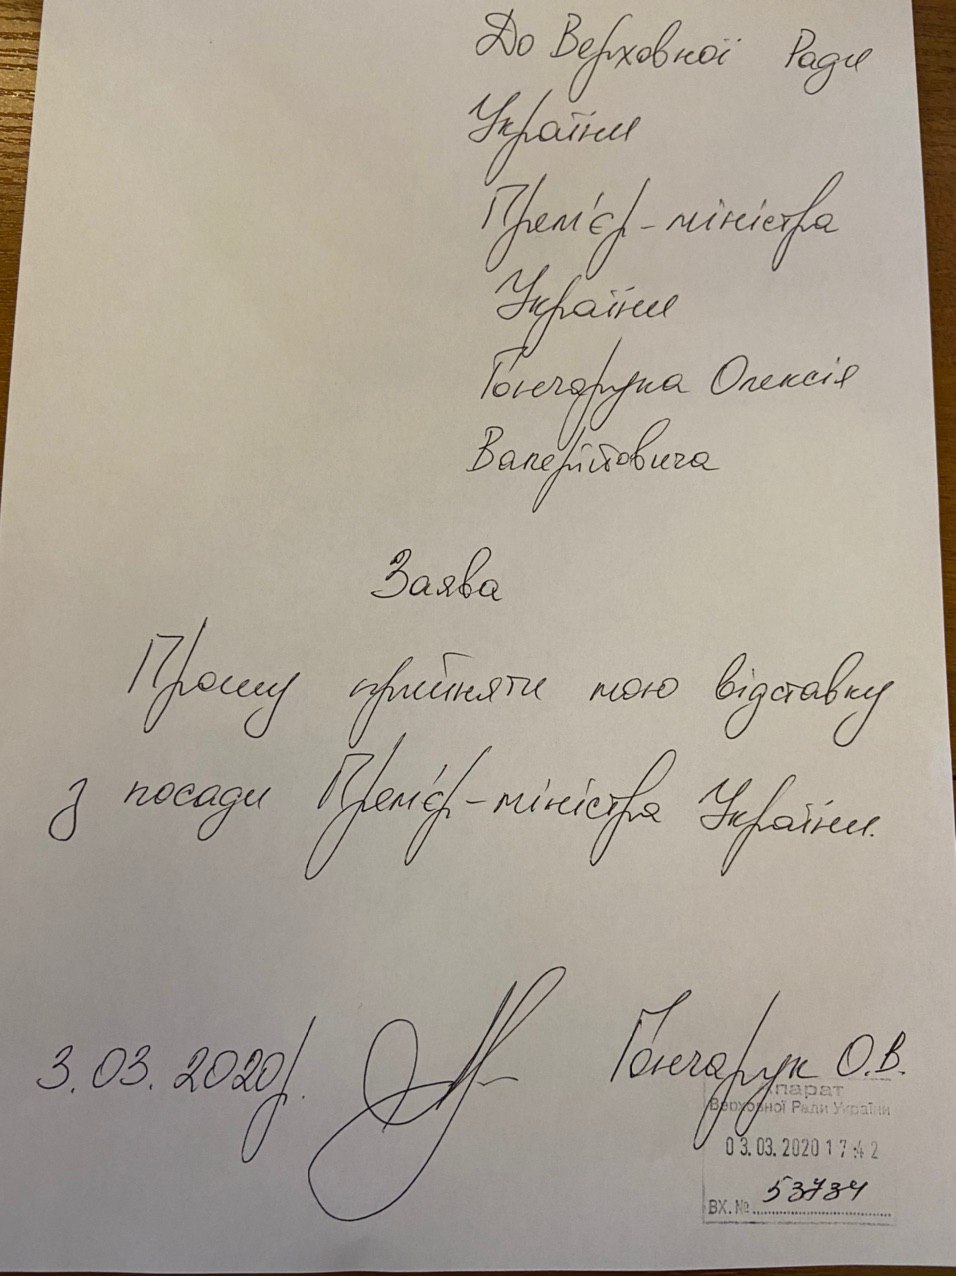 В сети опубликовано фото заявления премьера Алексея Гончарука об отставке - время регистрации заявления - 3 марта, 17:42, входящий номер - 53734